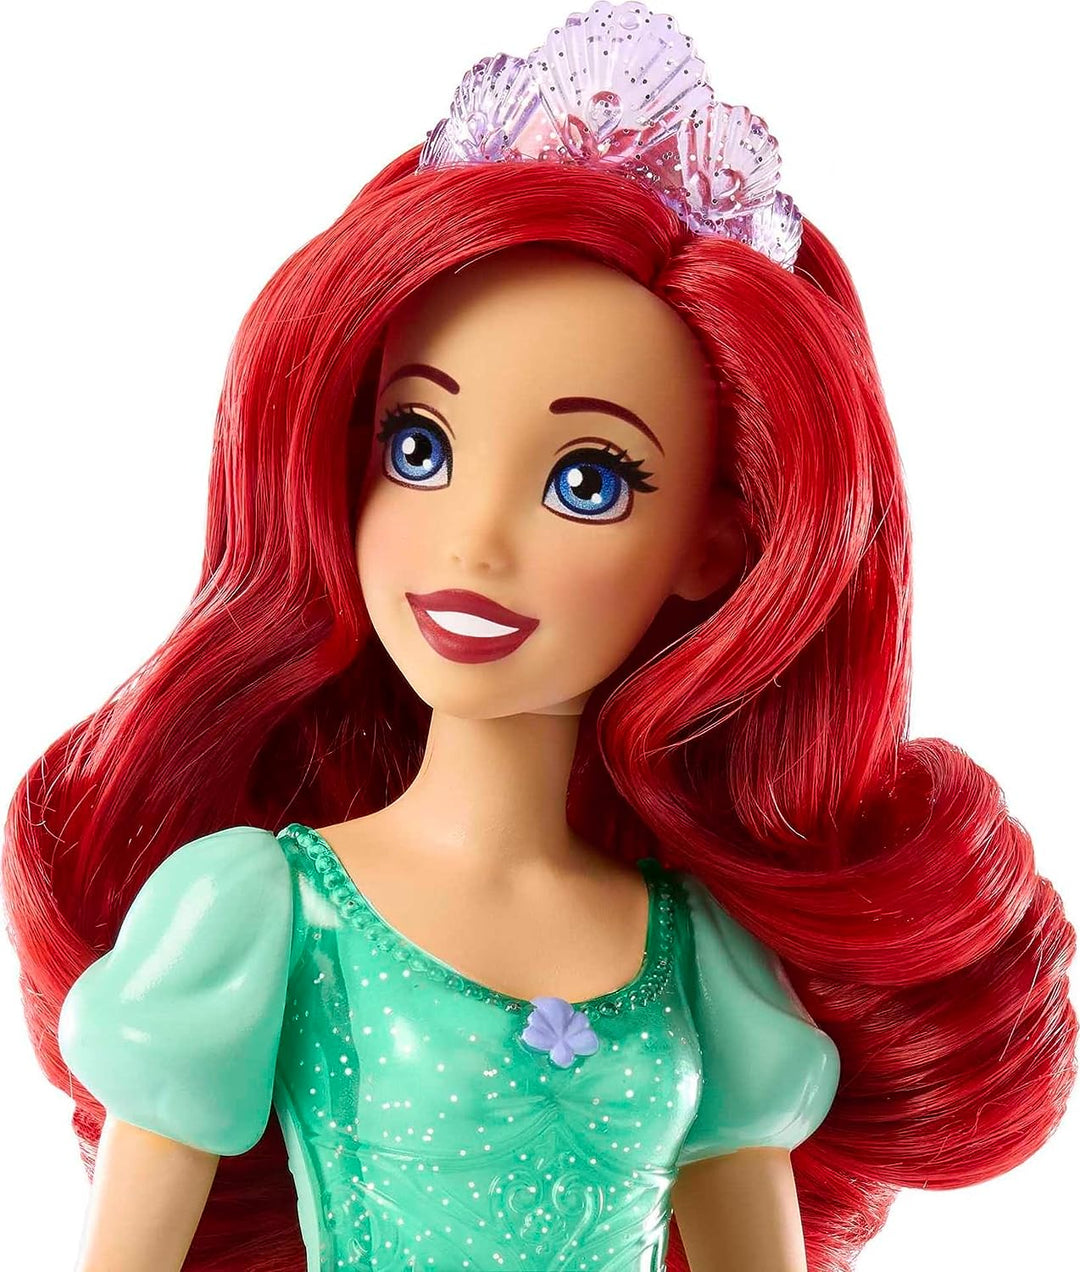 ?Disney Princess Toys, bewegliche Modepuppe Ariel mit glitzernder Kleidung und Klimaanlage